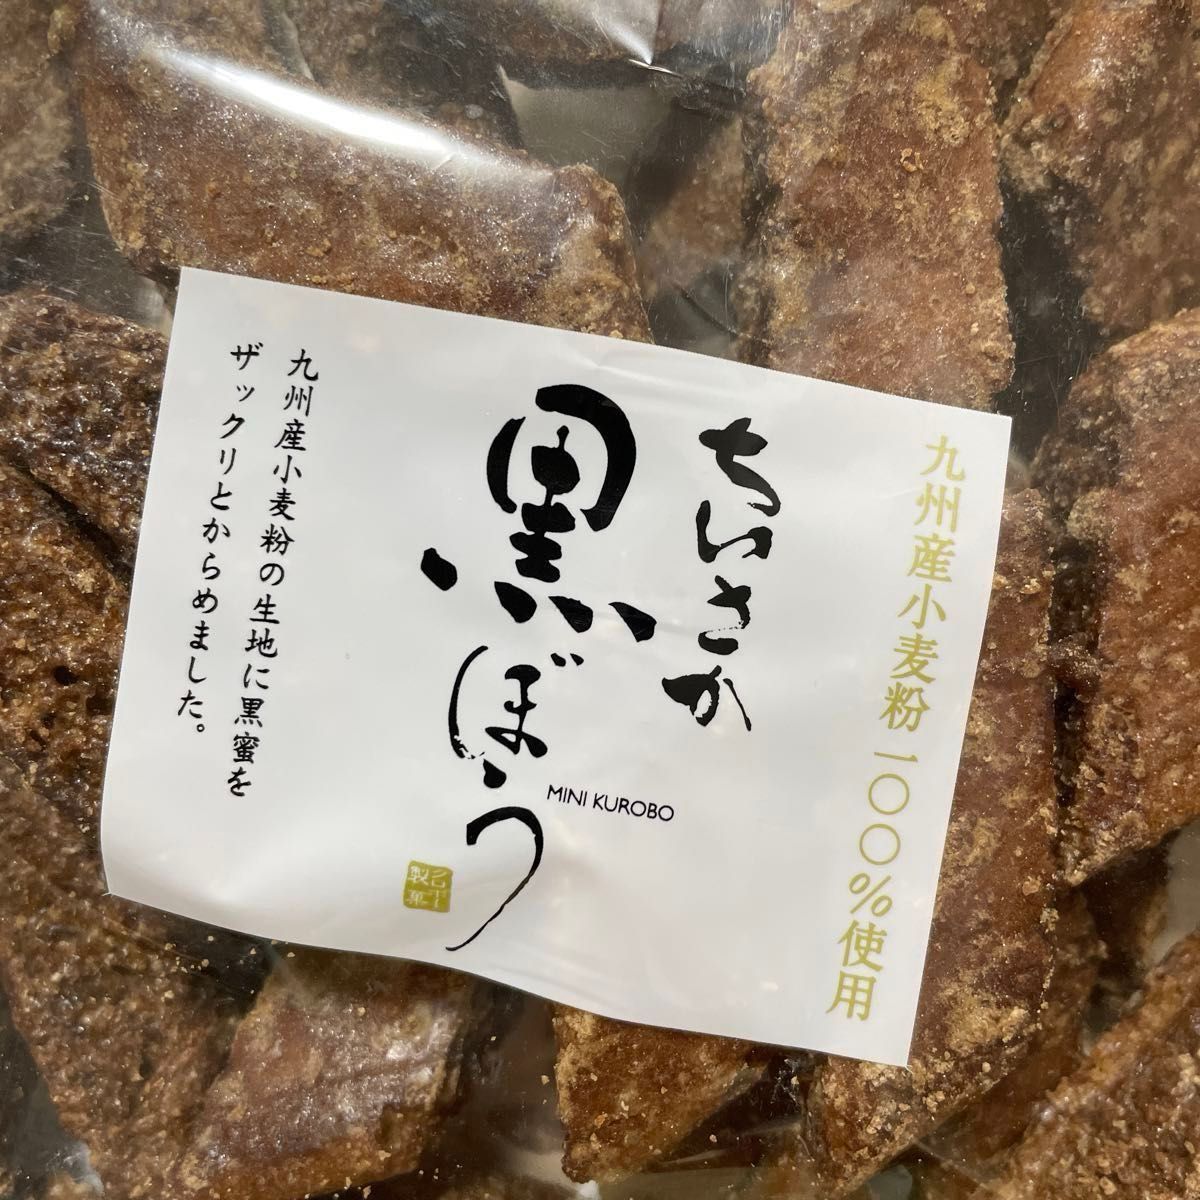 黒ぼう ちいさか黒ぼう クロボー 福岡久留米銘菓 大容量 2袋セット